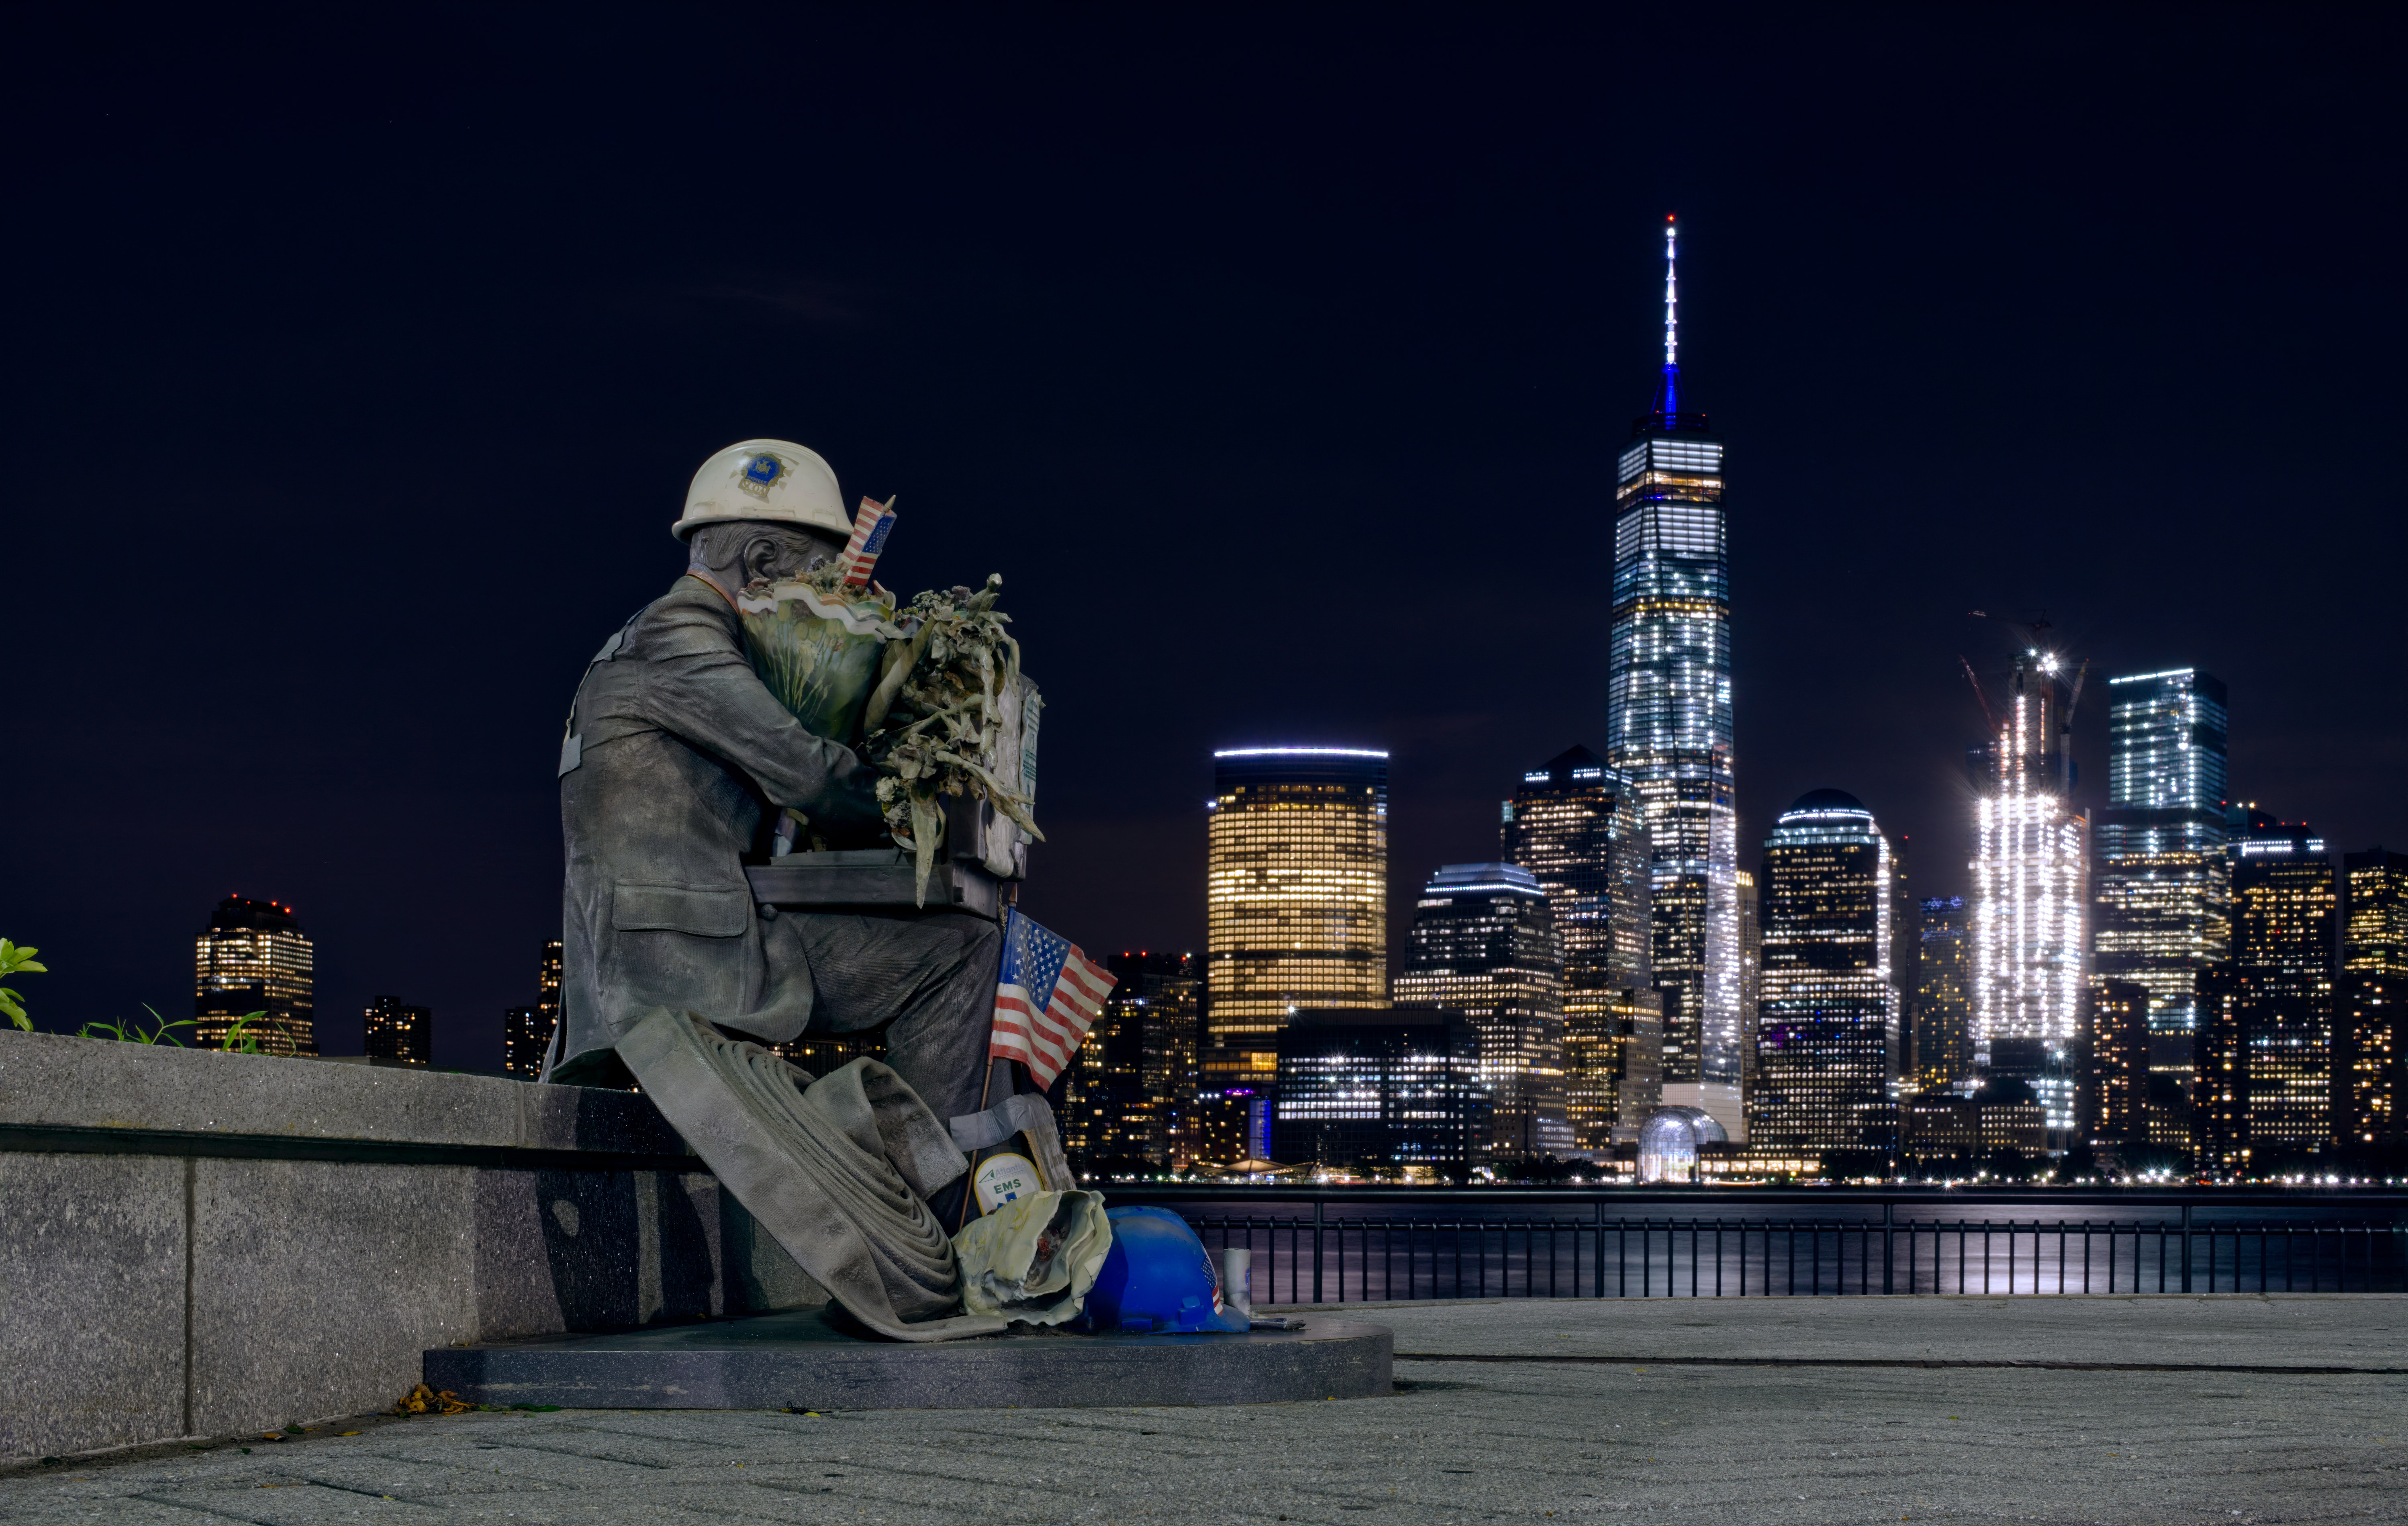 Erinnerung an den 11. September und der Freedom Tower, der nun die Skyline von New York prägt. Foto: © Partha Narasimhan / Unsplash